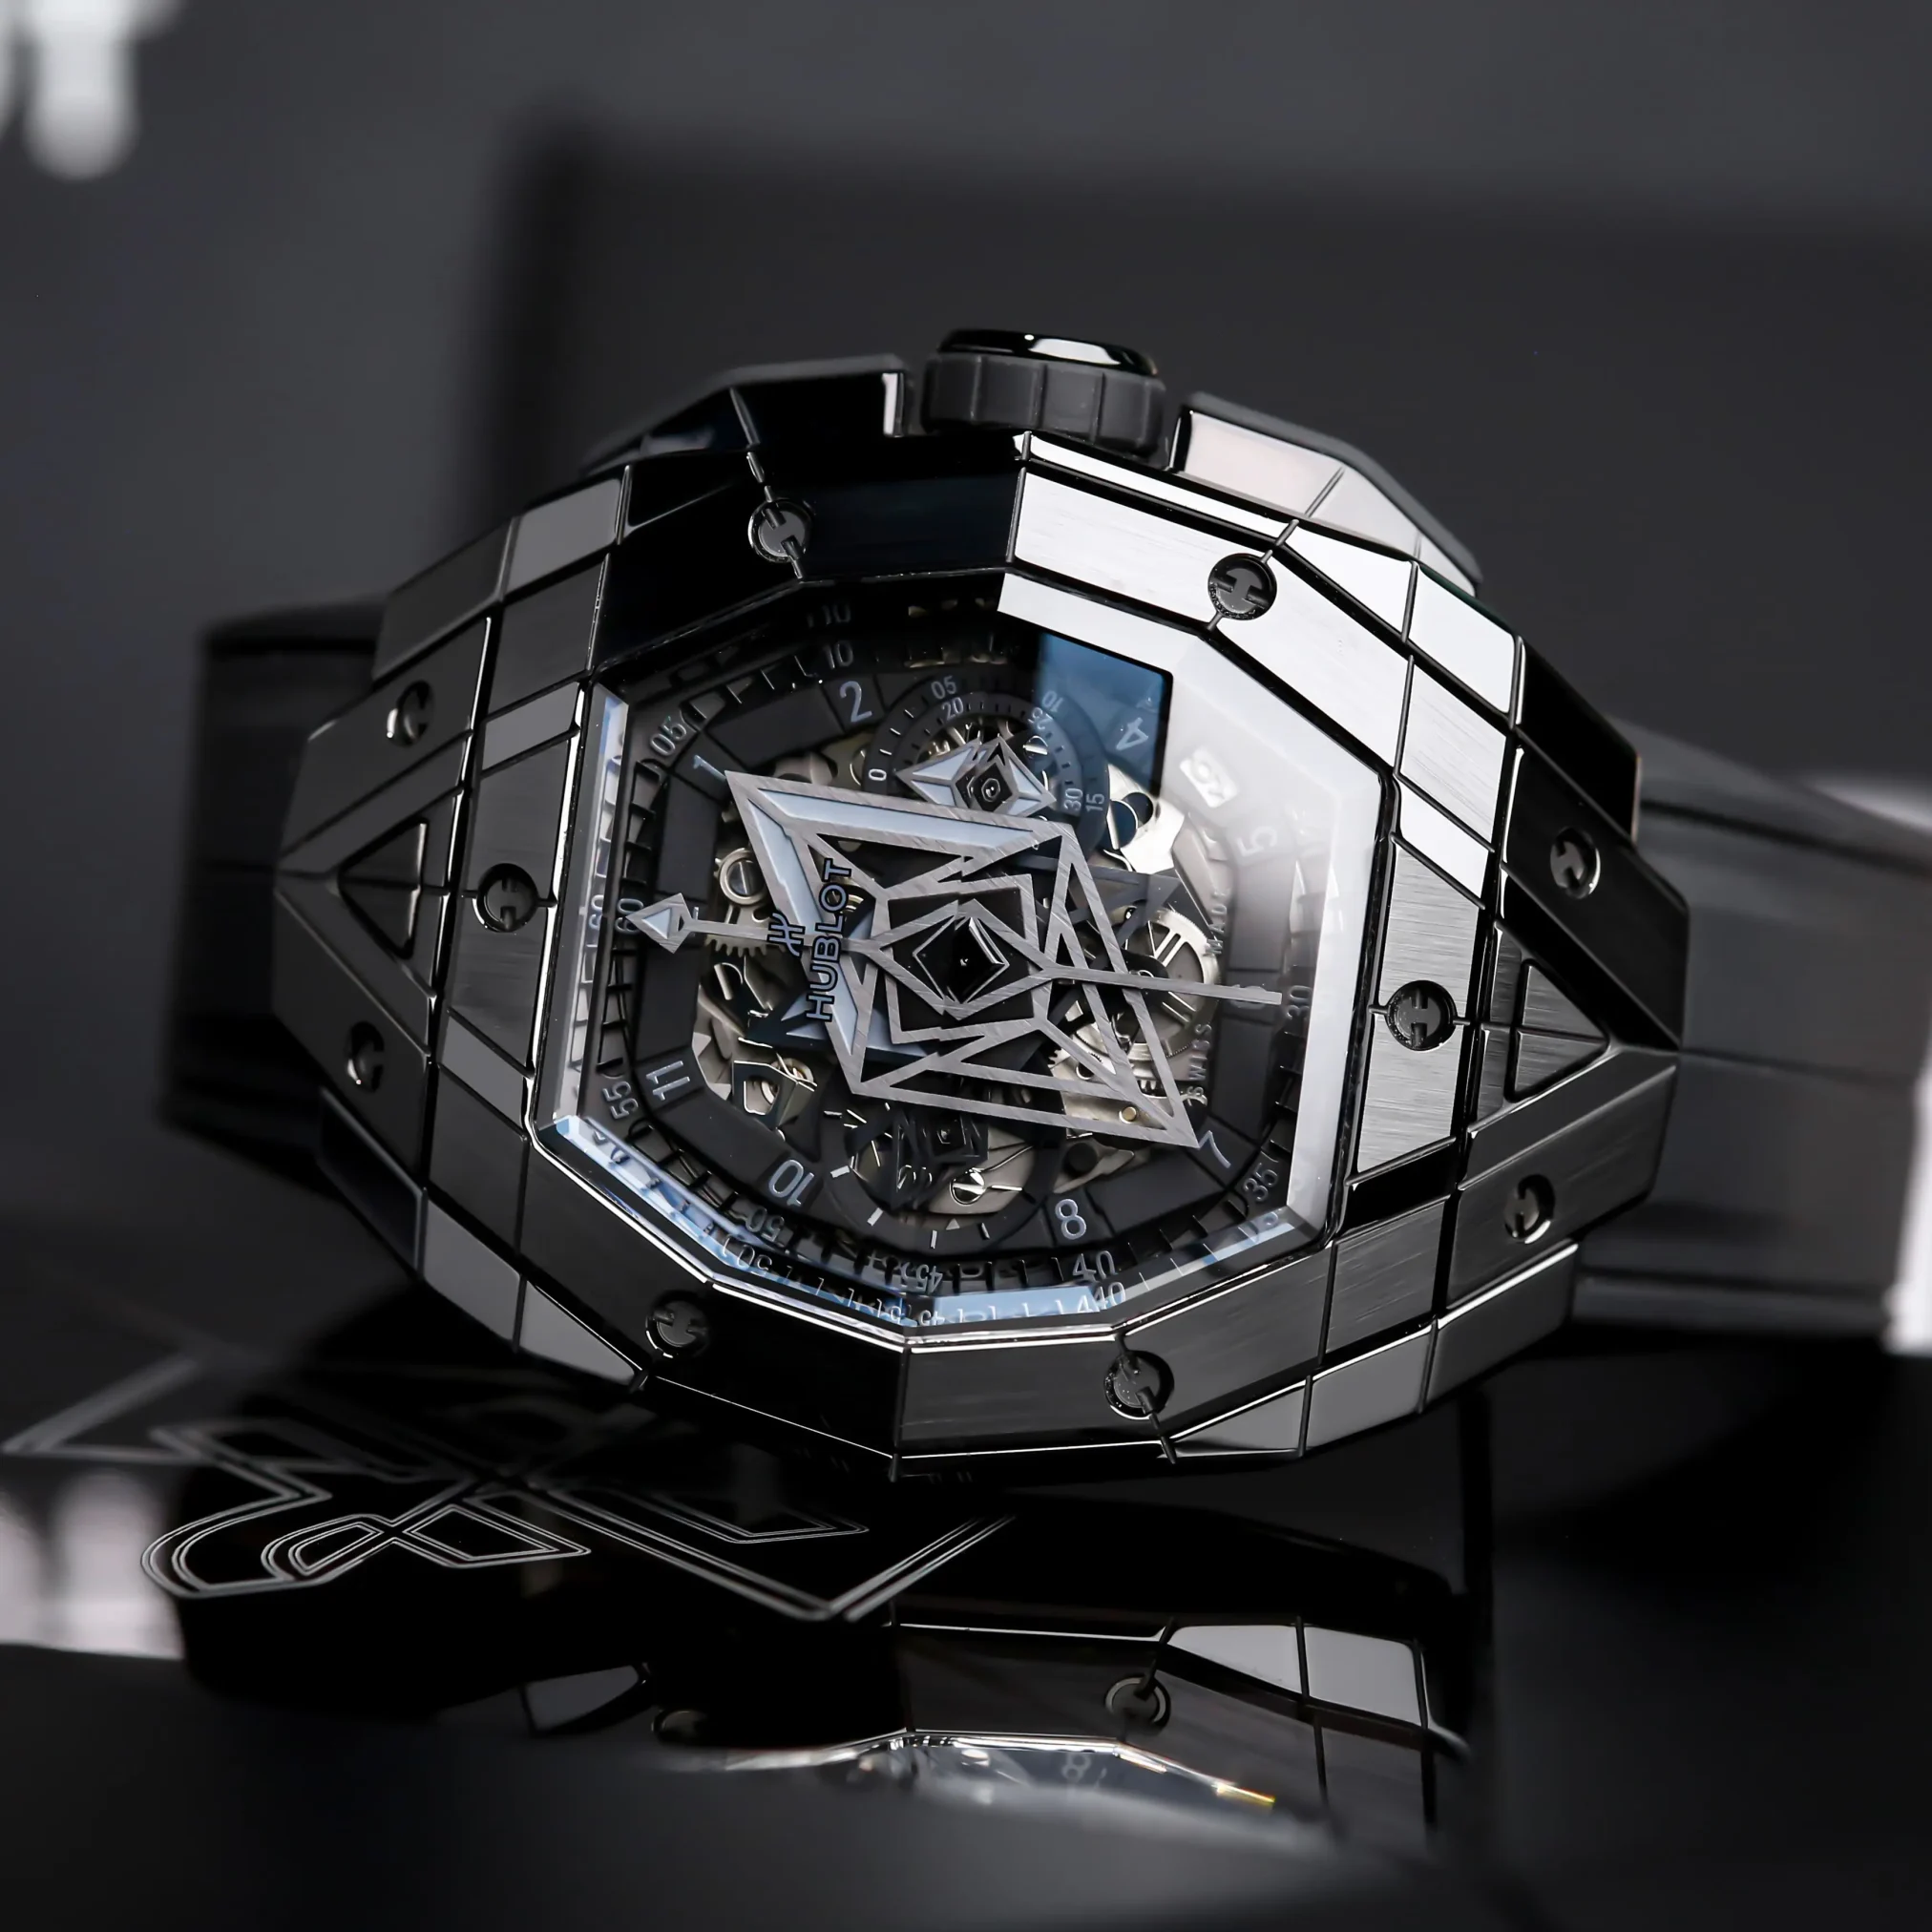 Đồng hồ Hublot Spirit of Big Bang Sang Bleu III All Black 648.CX.0114.RX.MXM23 với mặt số màu đen. Dây đeo bằng cao su. Thân vỏ bằng titanium.